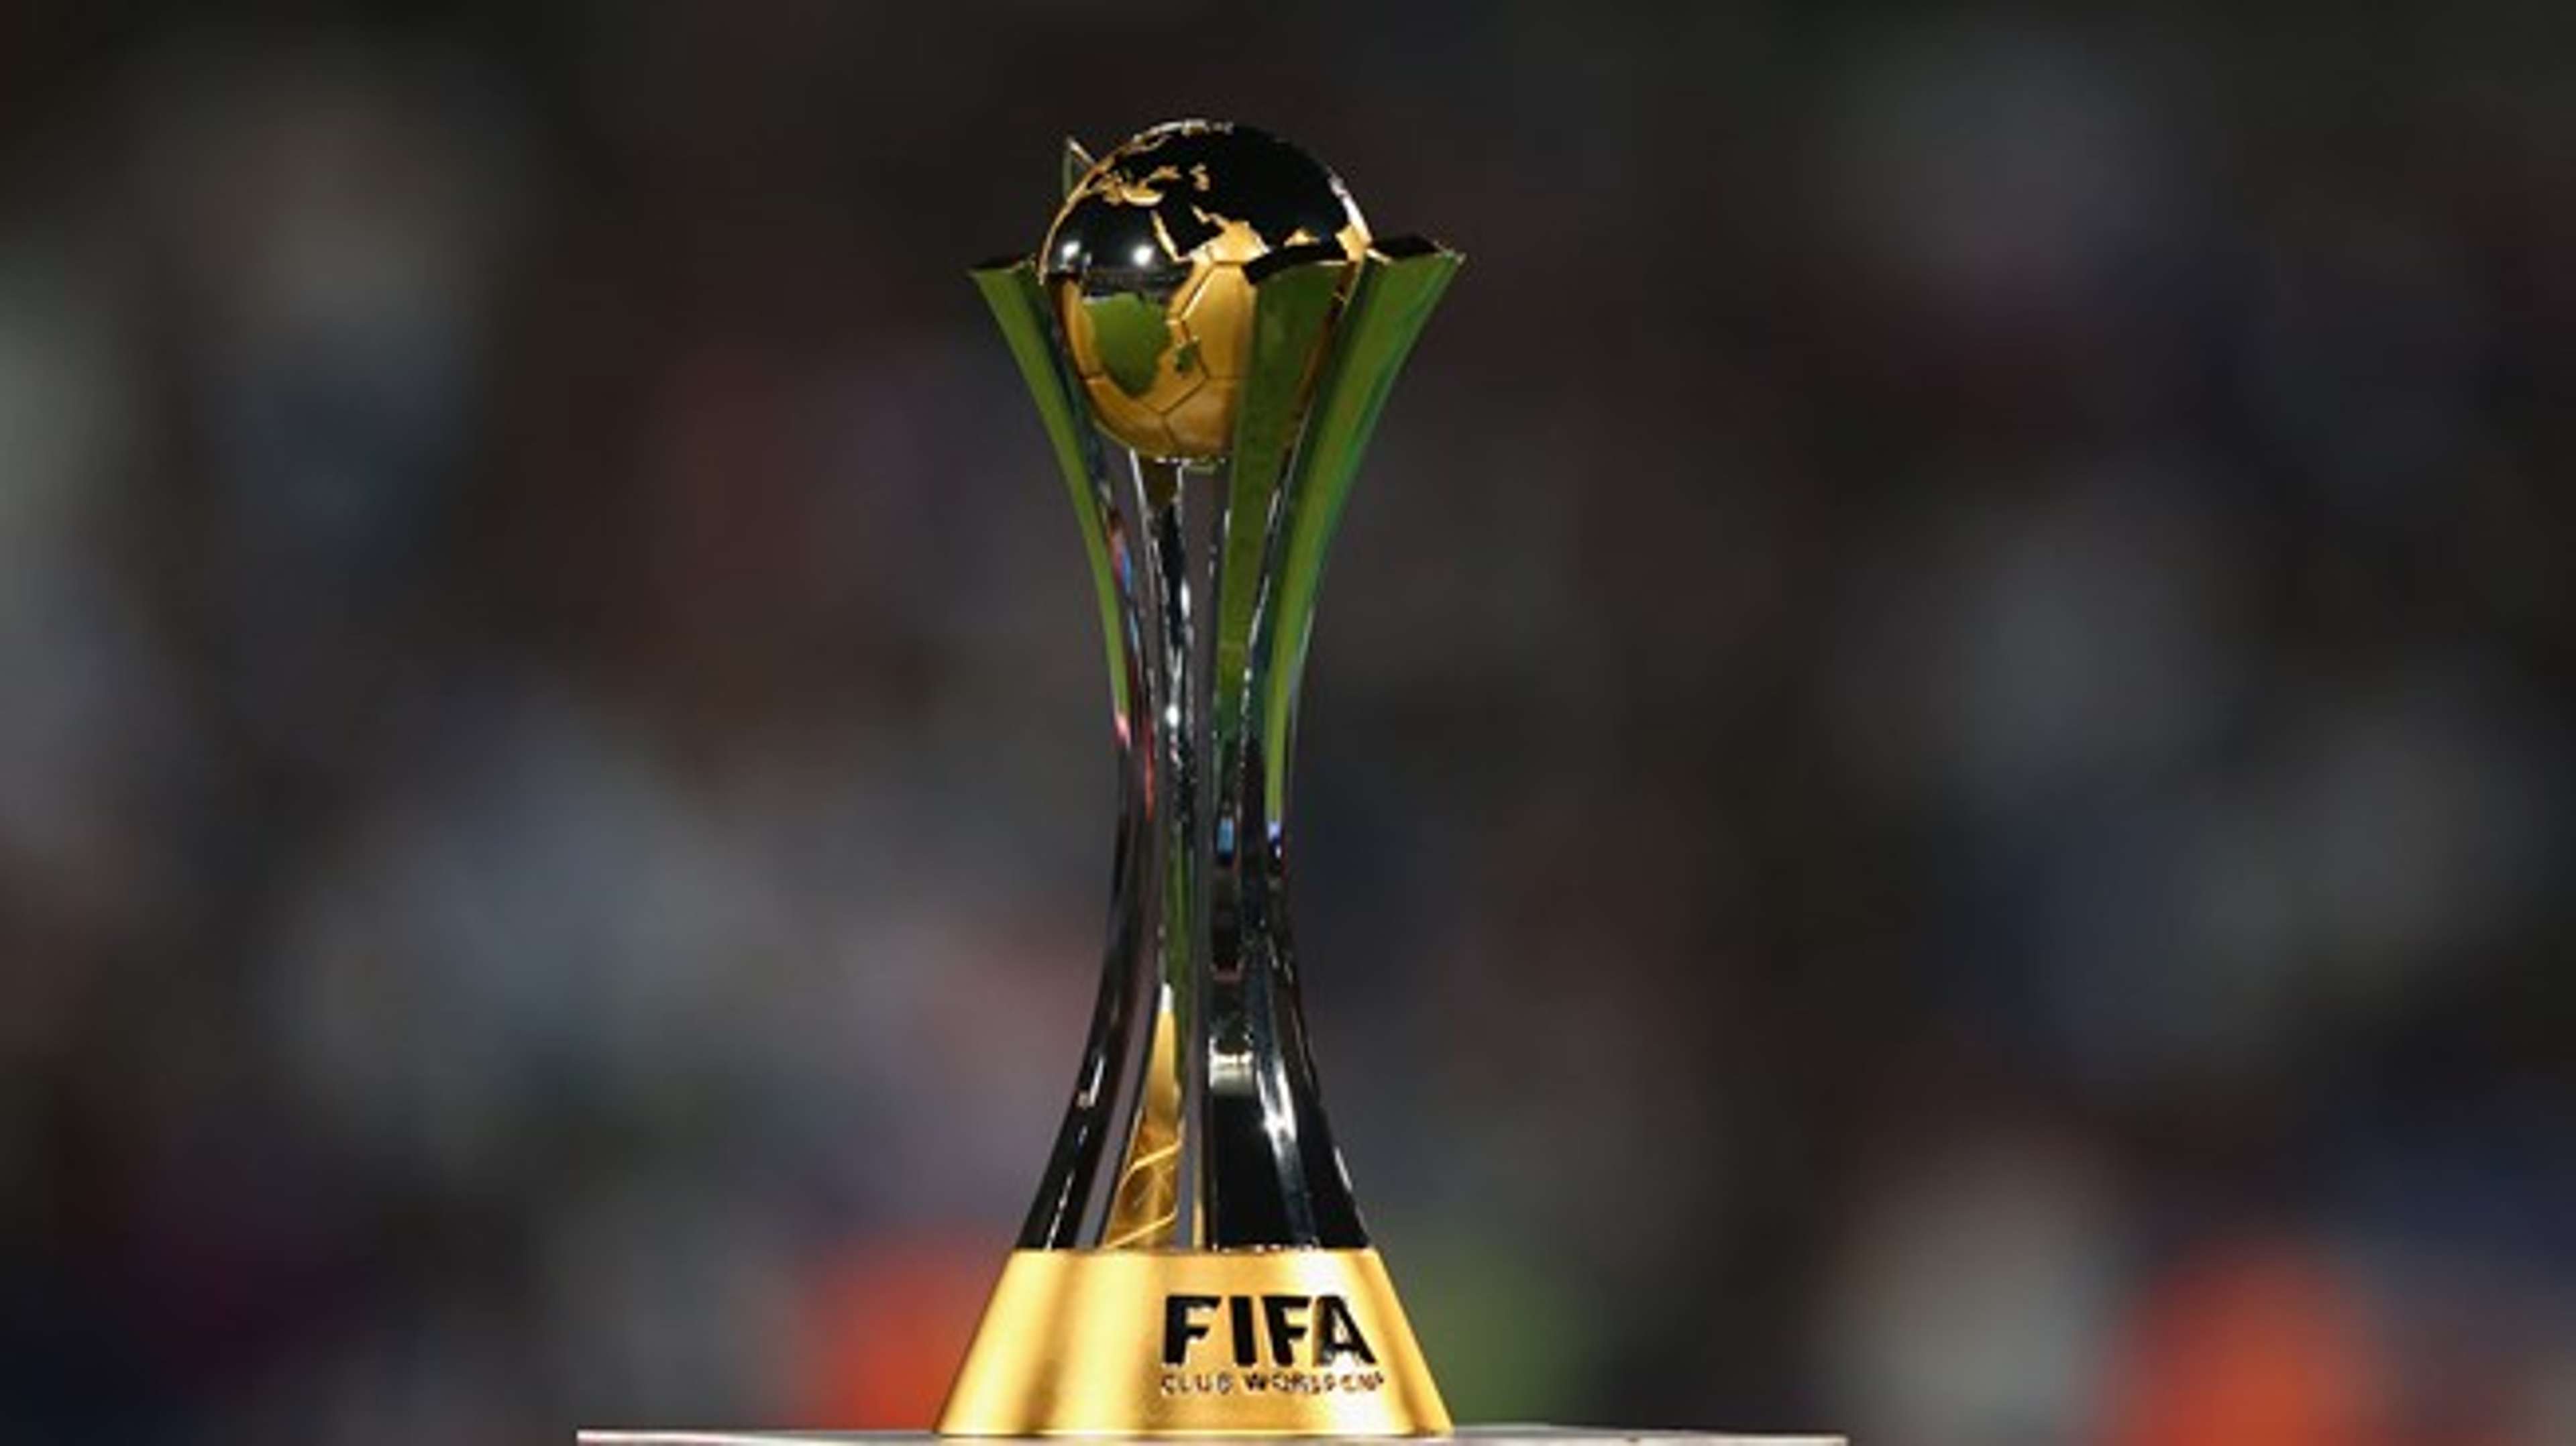 Club world cup trophy